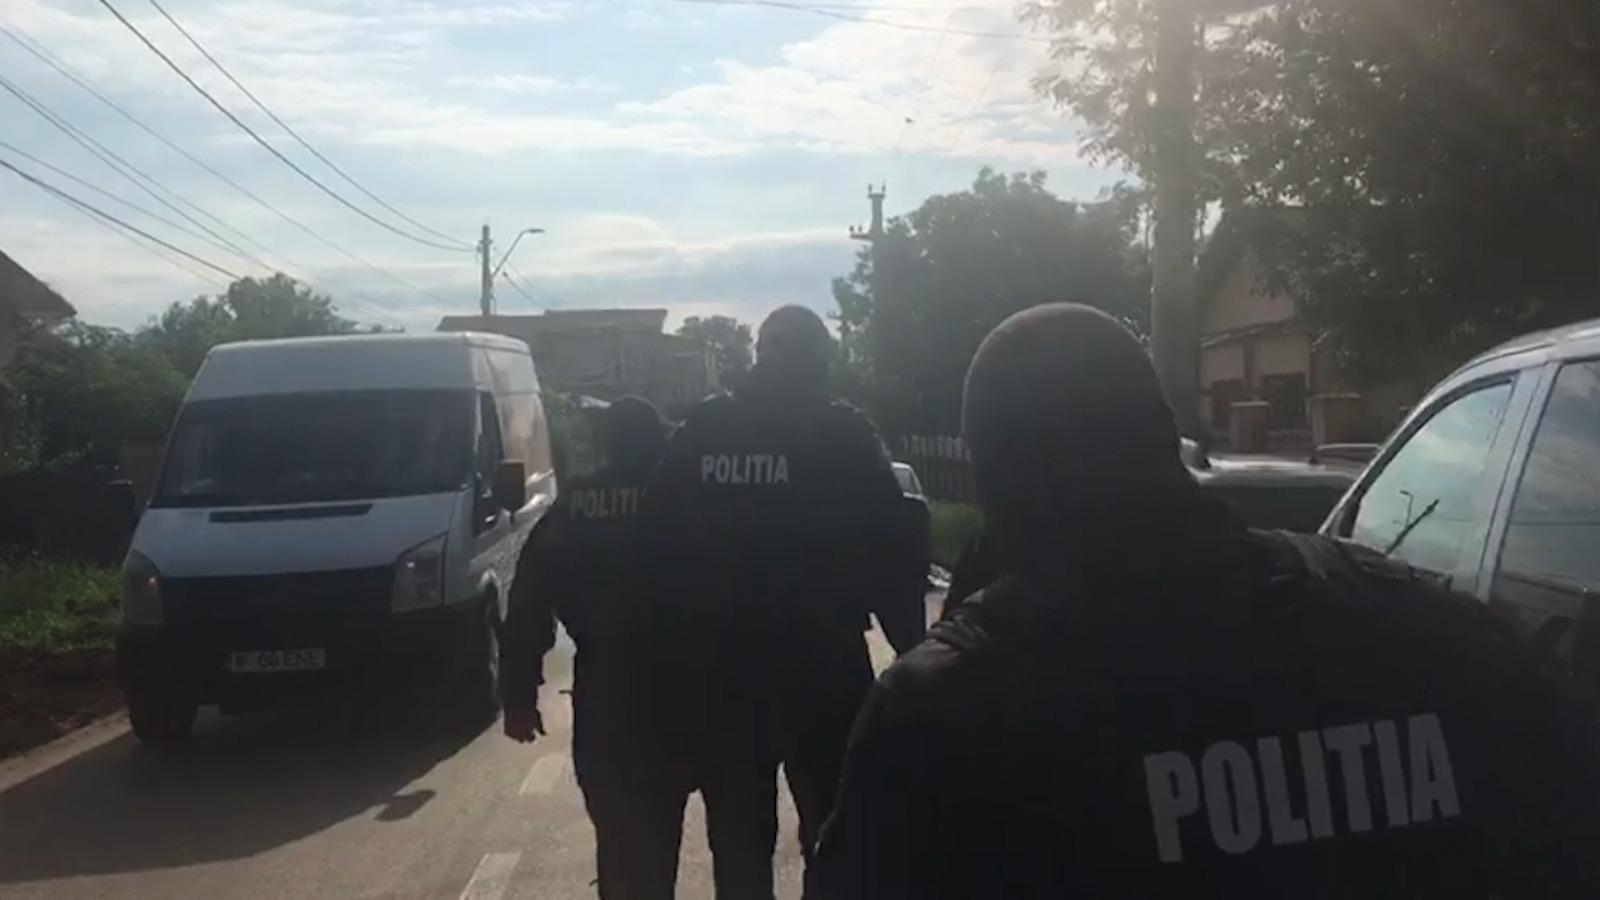 Primarul din Ștefănești, acuzat că a violat o fetiță de 13 ani. Victima a rămas însărcinată în urma abuzului